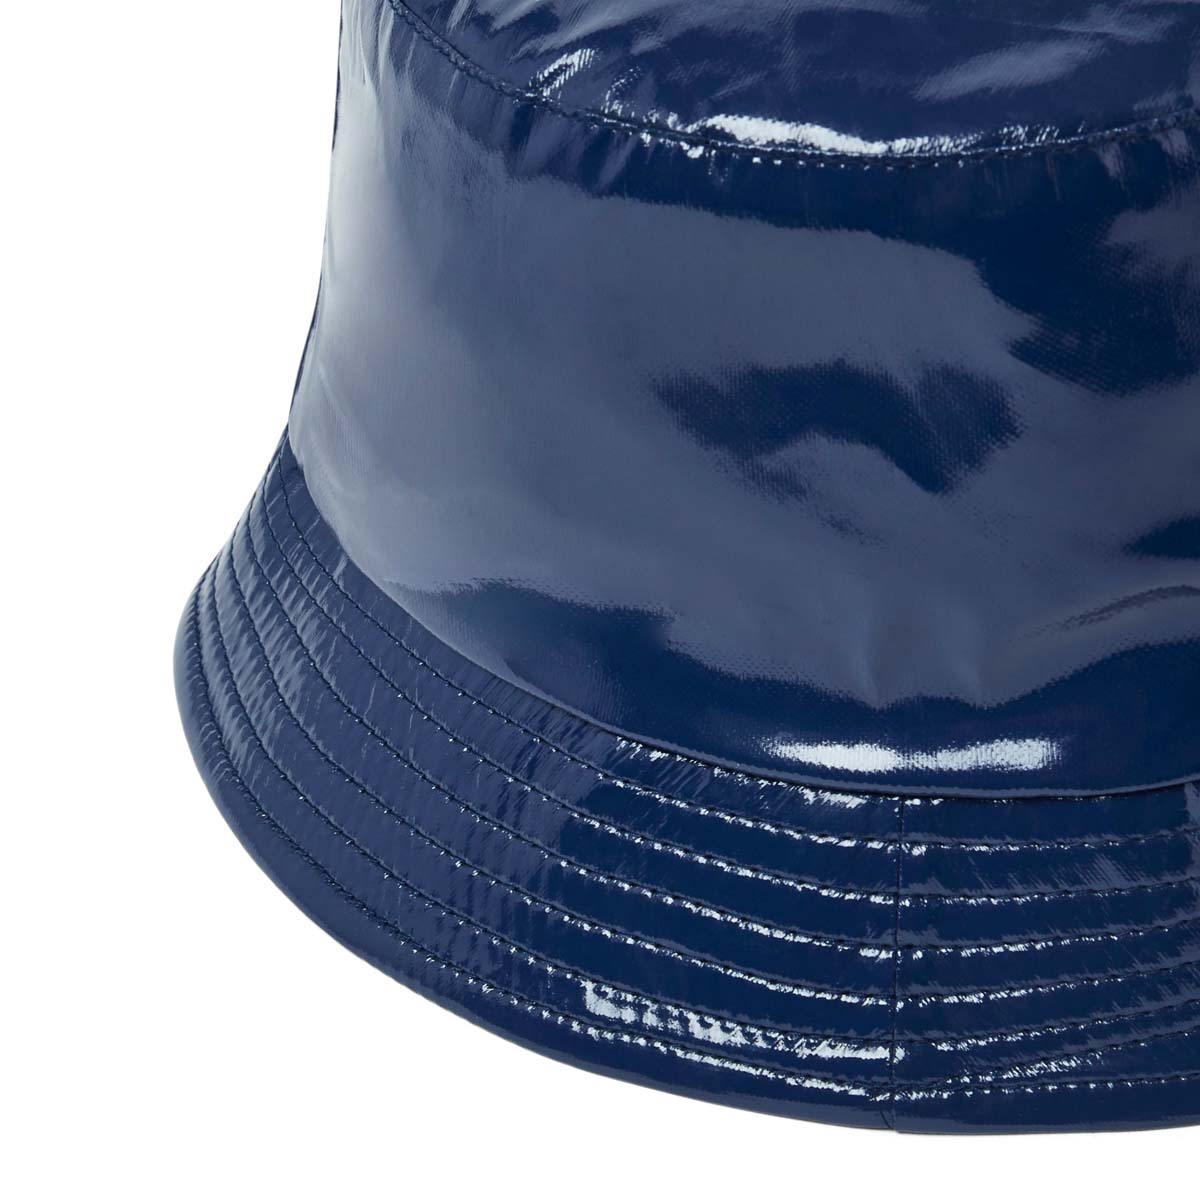 Chapeau de pluie - bob en vinyle bleu marine